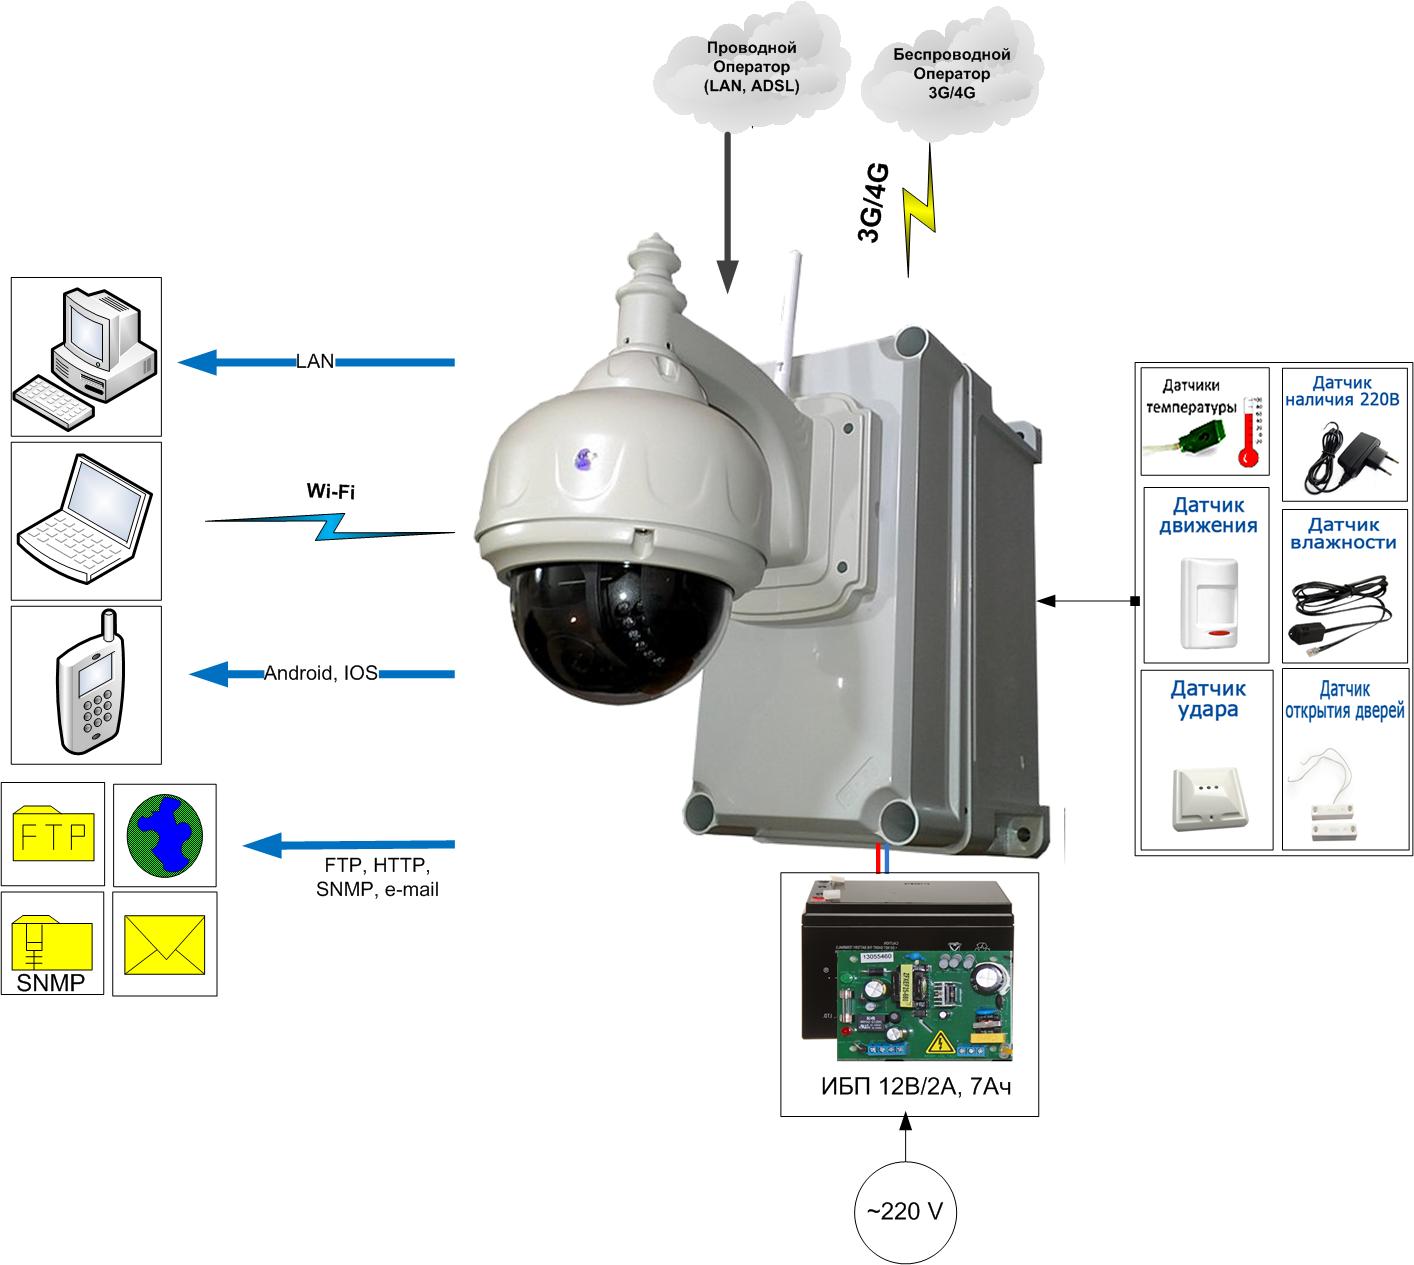 3G/4G IP-камера с маршрутизатором, ИБП и охранно-пожарной сигнализацией